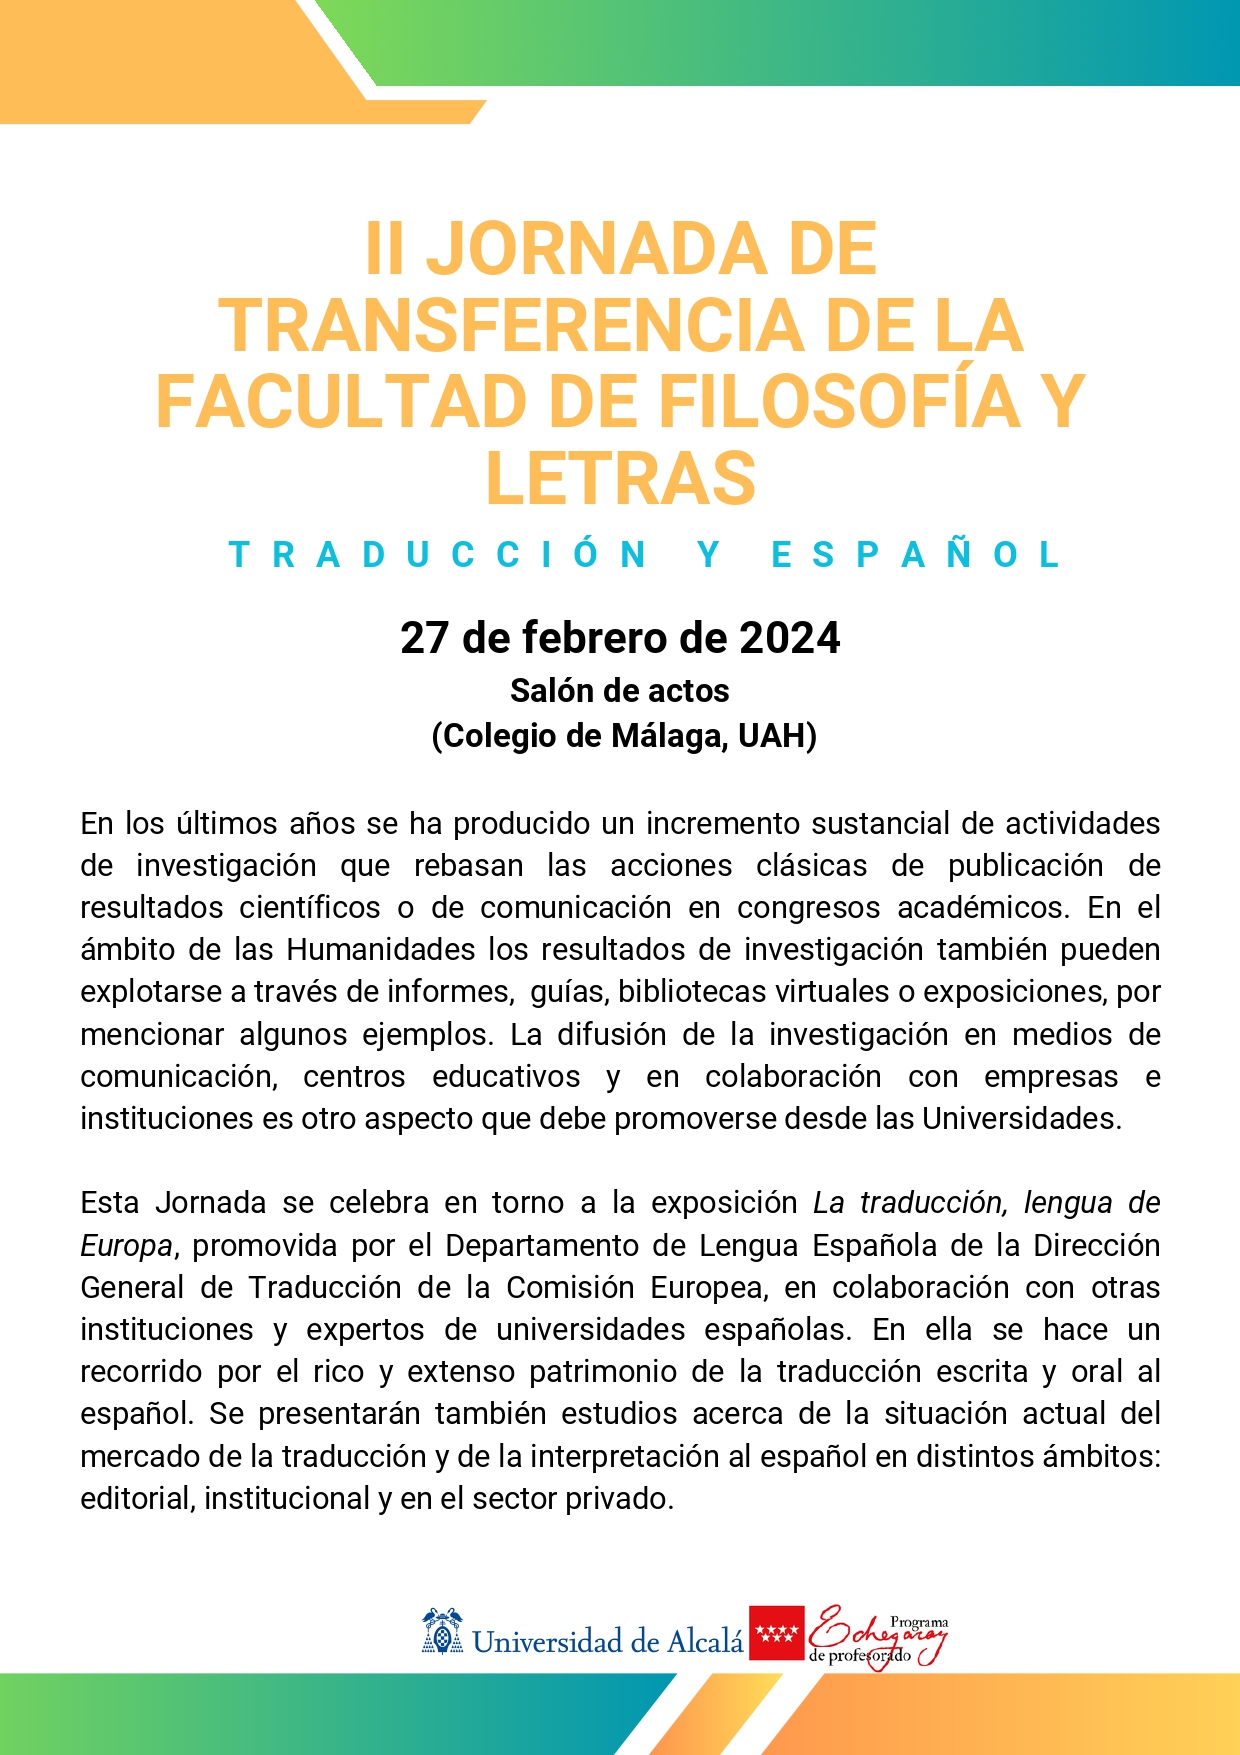 II Jornada de transferencia de la Facultad de Filosofía y Letras: traducción y español